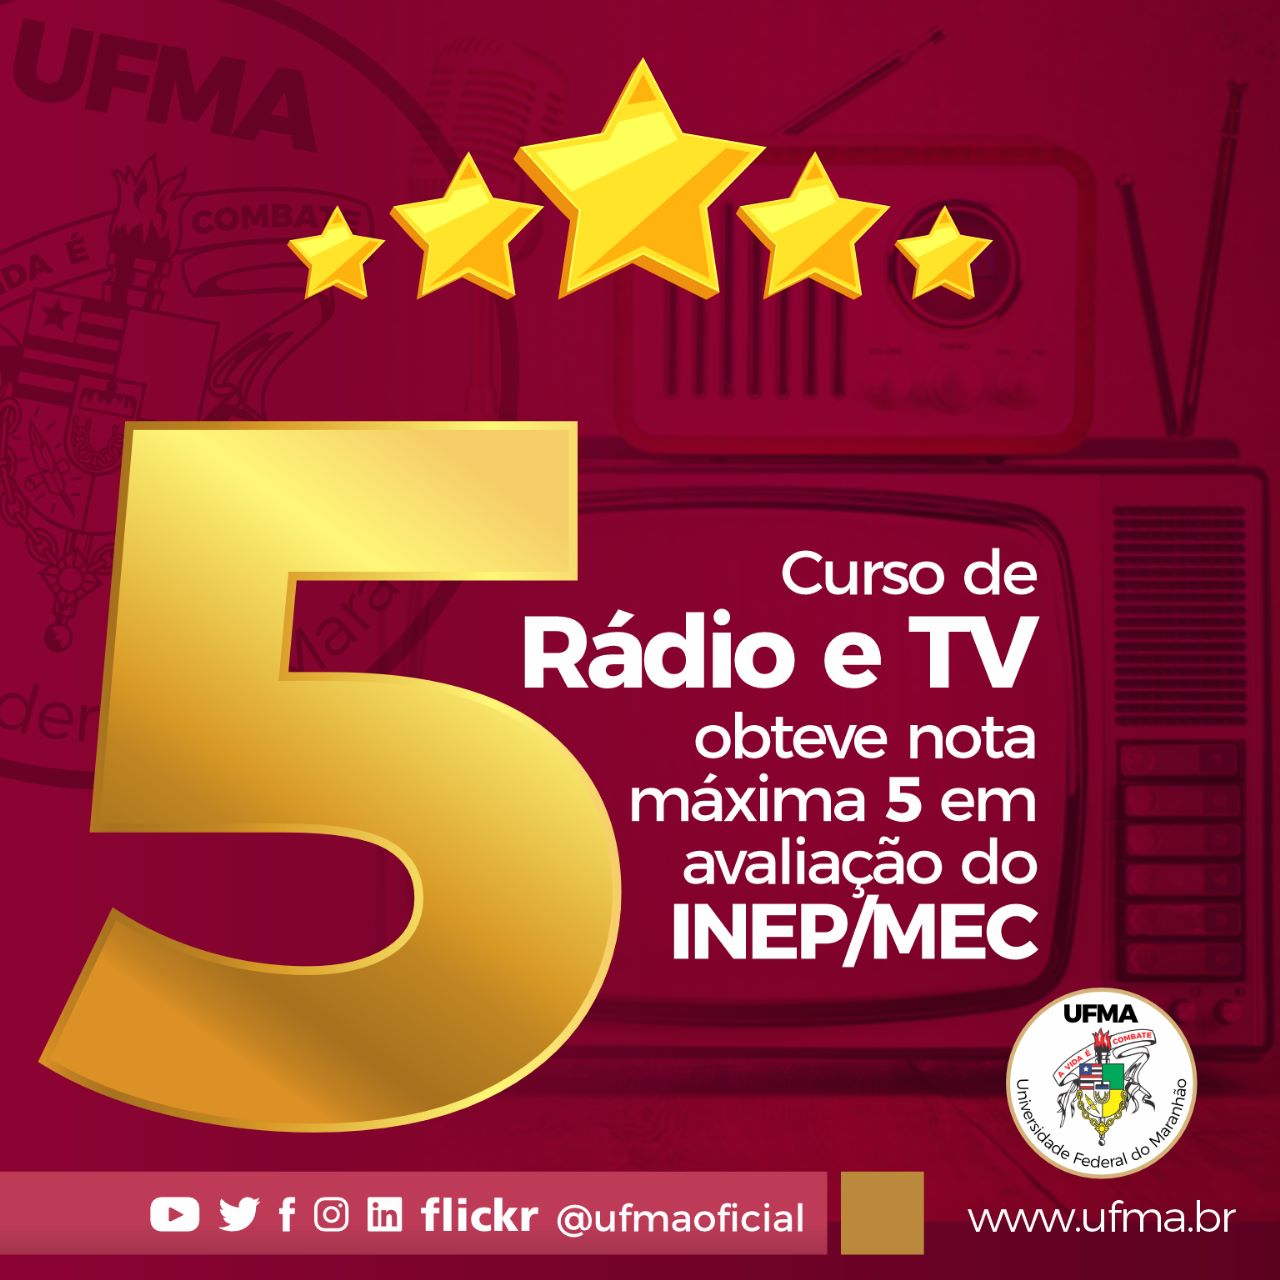 Conquista para os estudantes! Curso de Comunicação Social – Rádio e TV da UFMA obtém nota máxima em avaliação do Mec